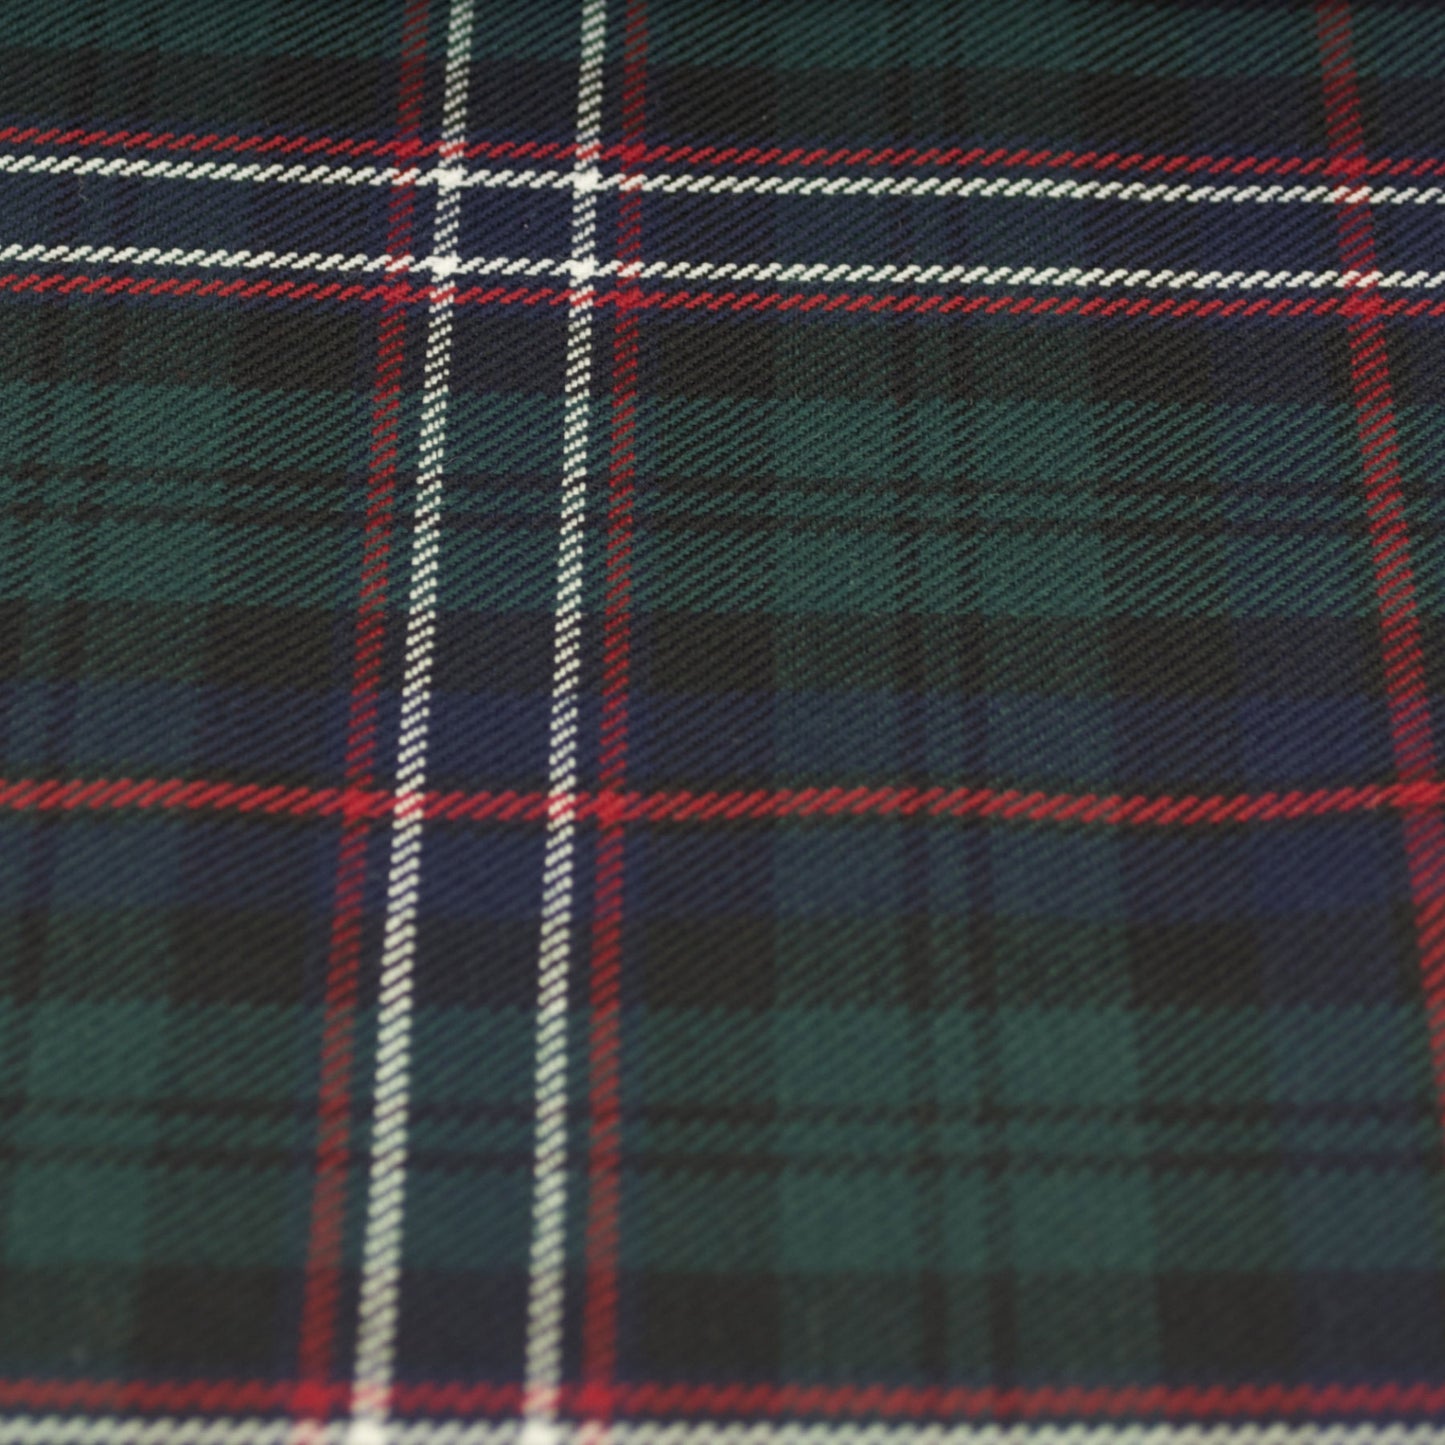 Tartan Fabric - Scottish National